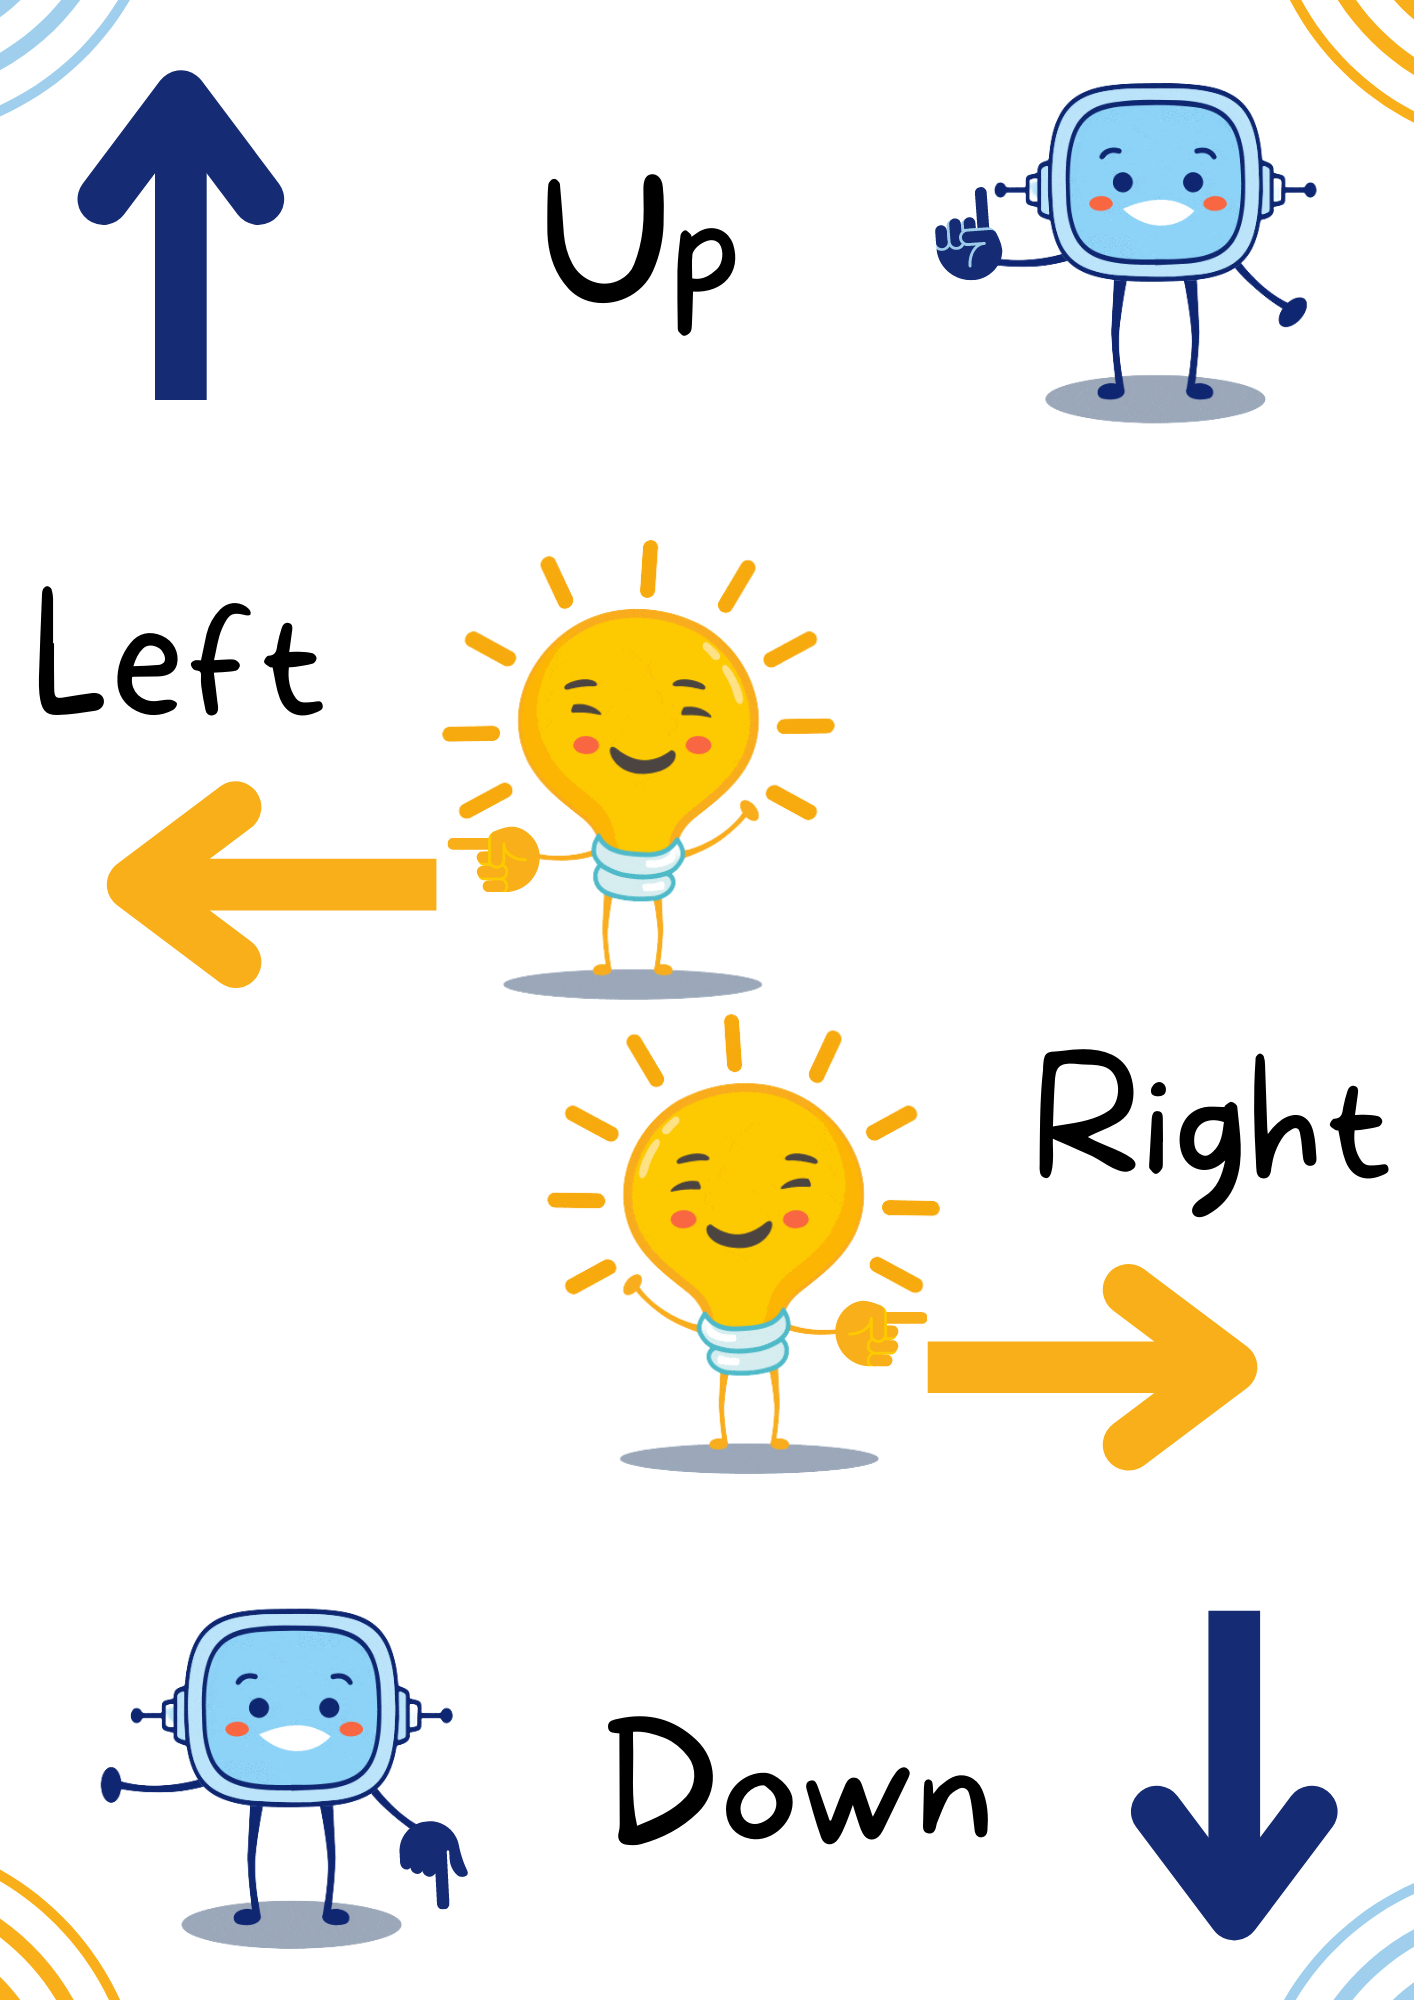 La imagen muestra las 4 direcciones en inglés: up and down; right and left.